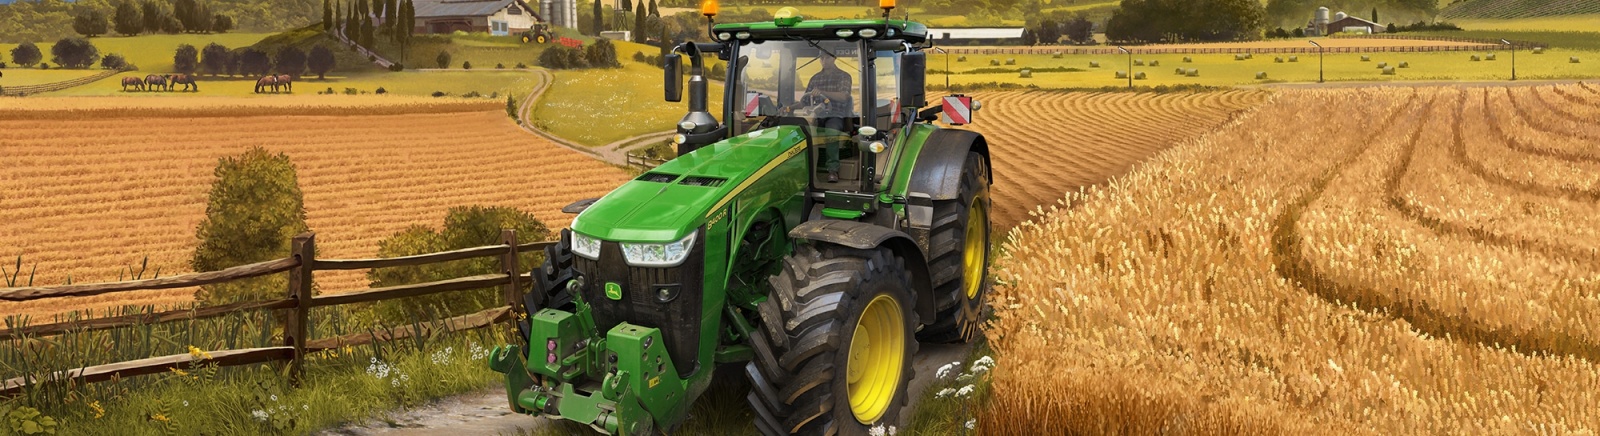 Дата выхода Farming Simulator 22  на PC, PS5 и Xbox Series X в России и во всем мире